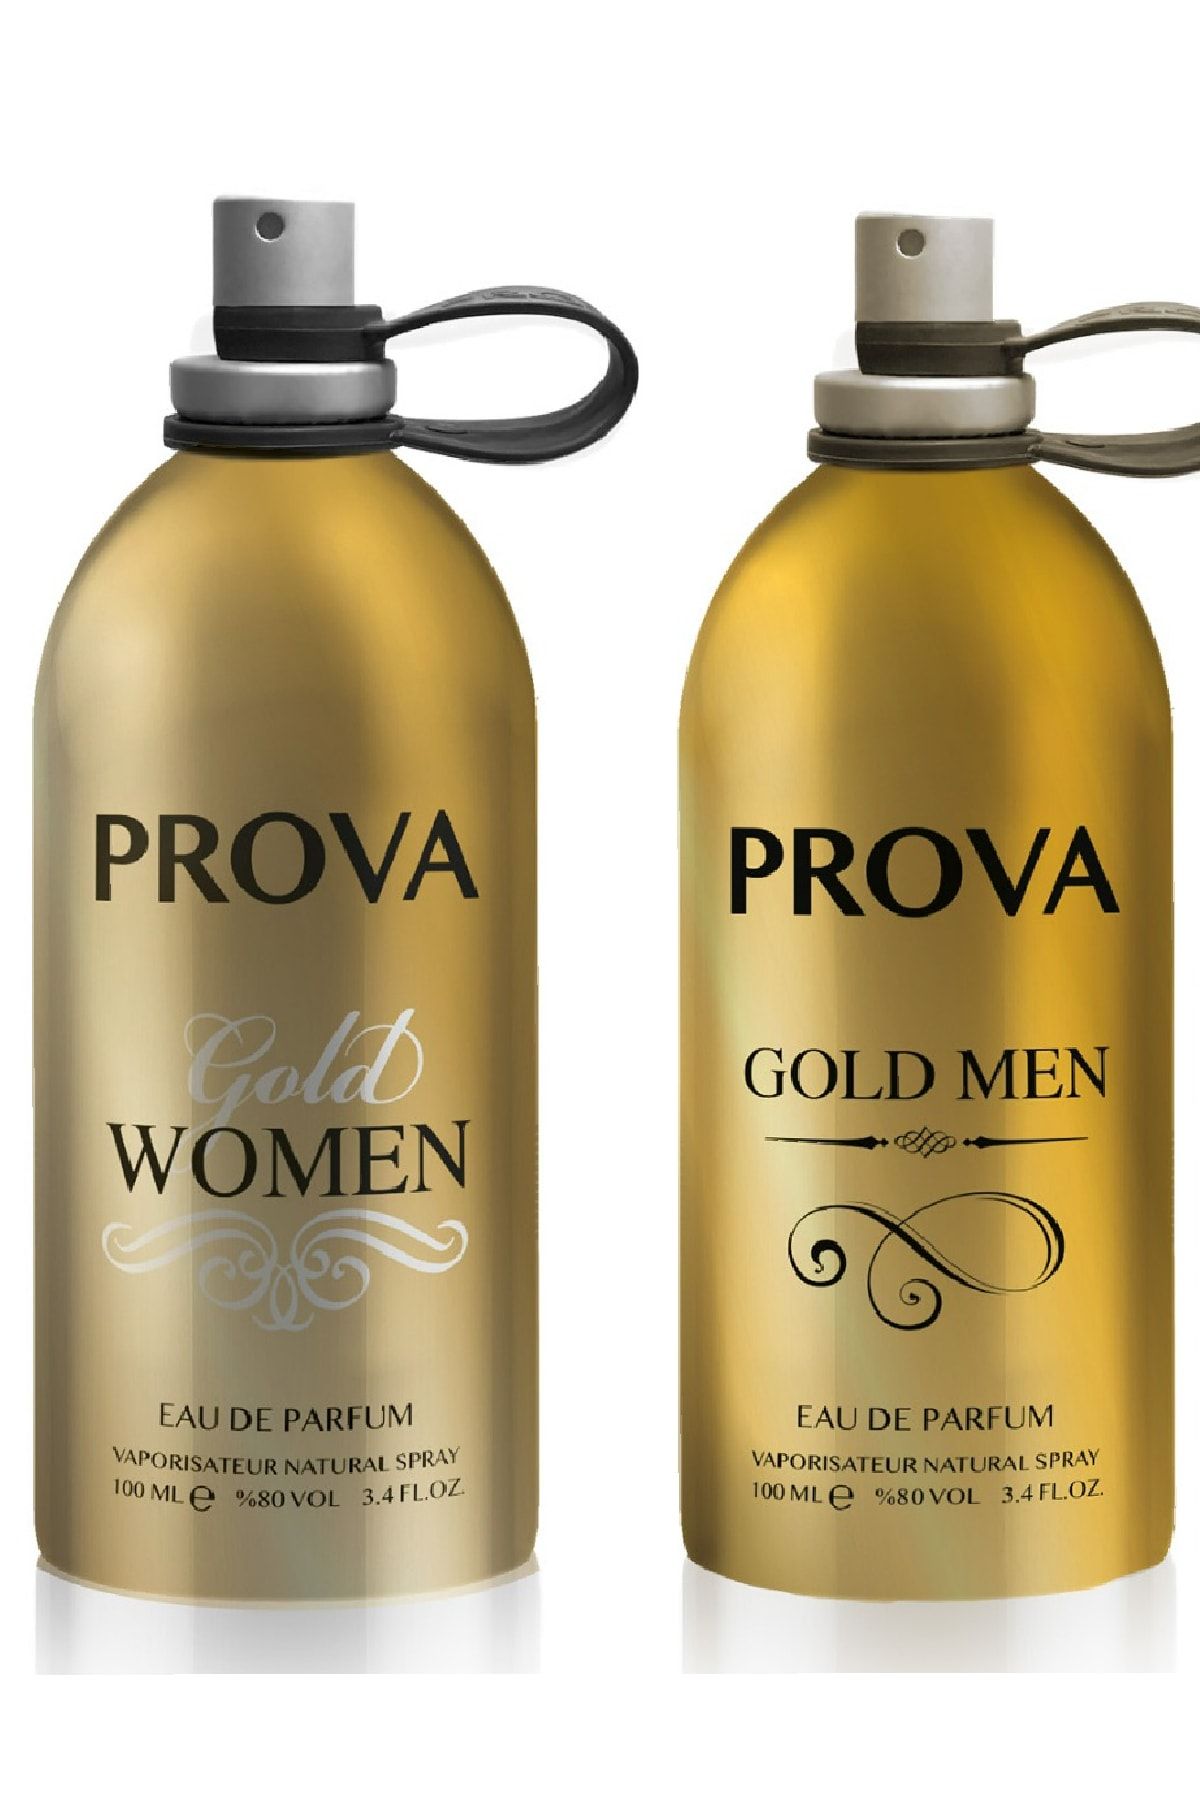 Prova Gold Women ve Gold Men Kadın ve Erkek Parfüm EDP 2 x100 ml